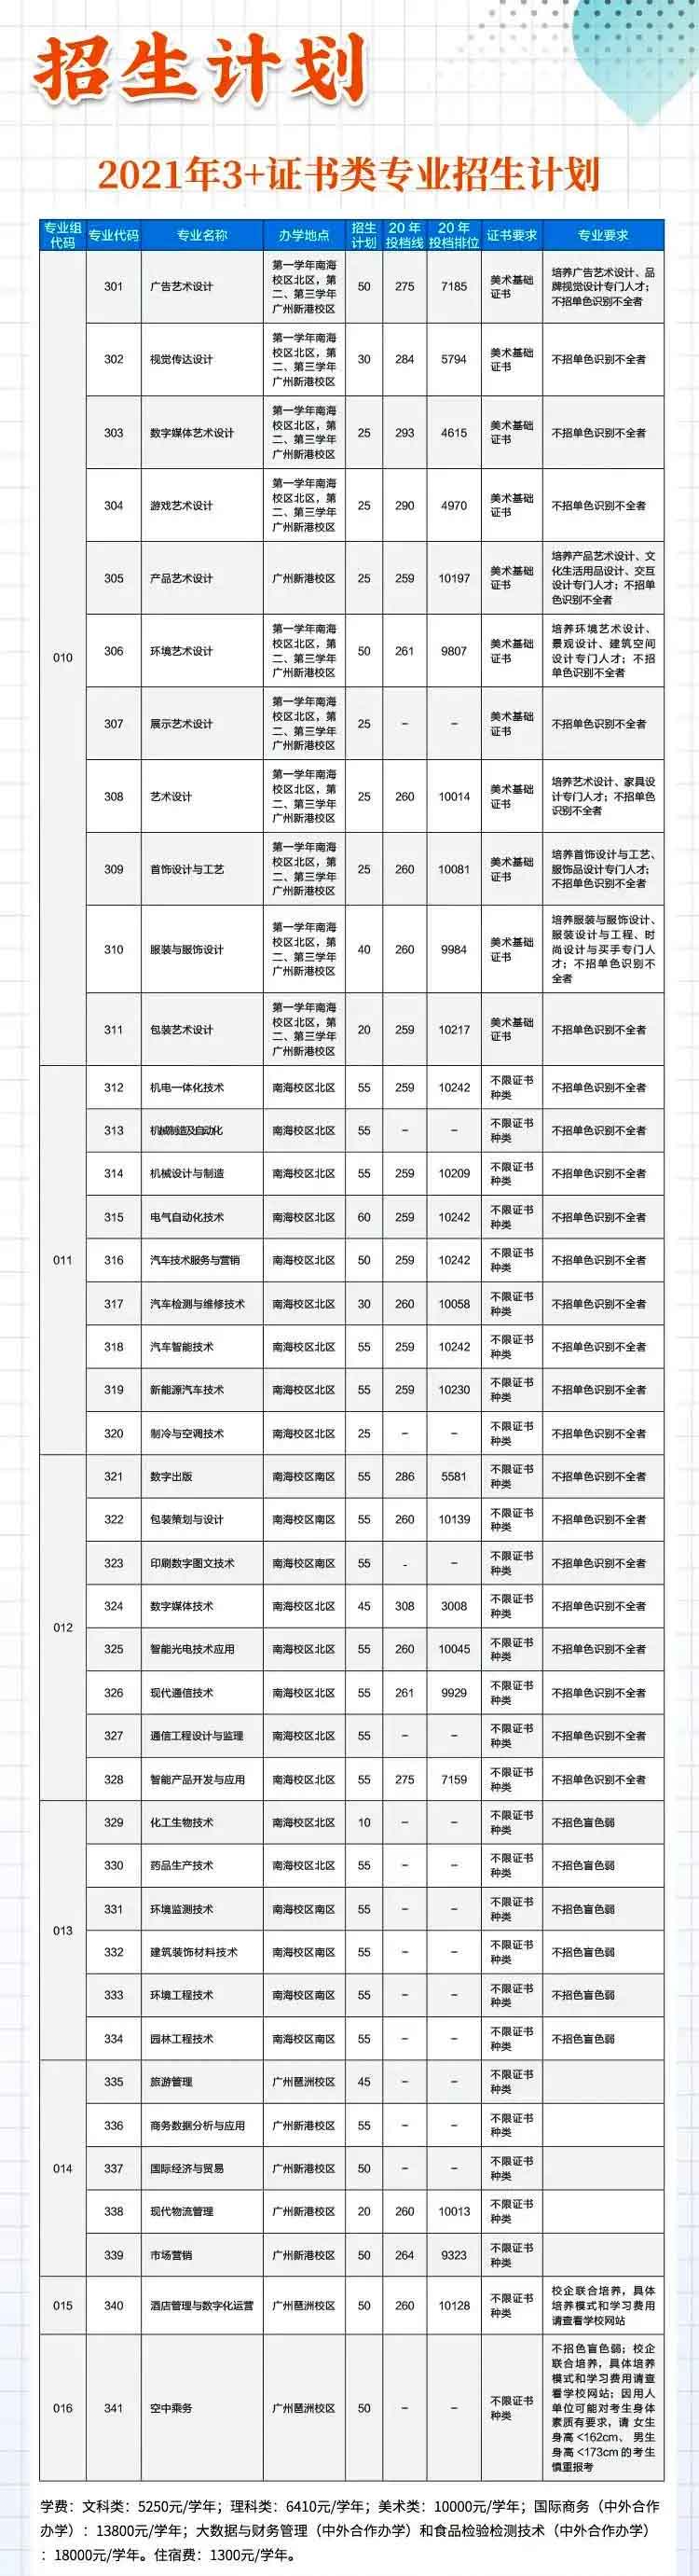 【院校介绍】广东轻工职业技术学院(图2)